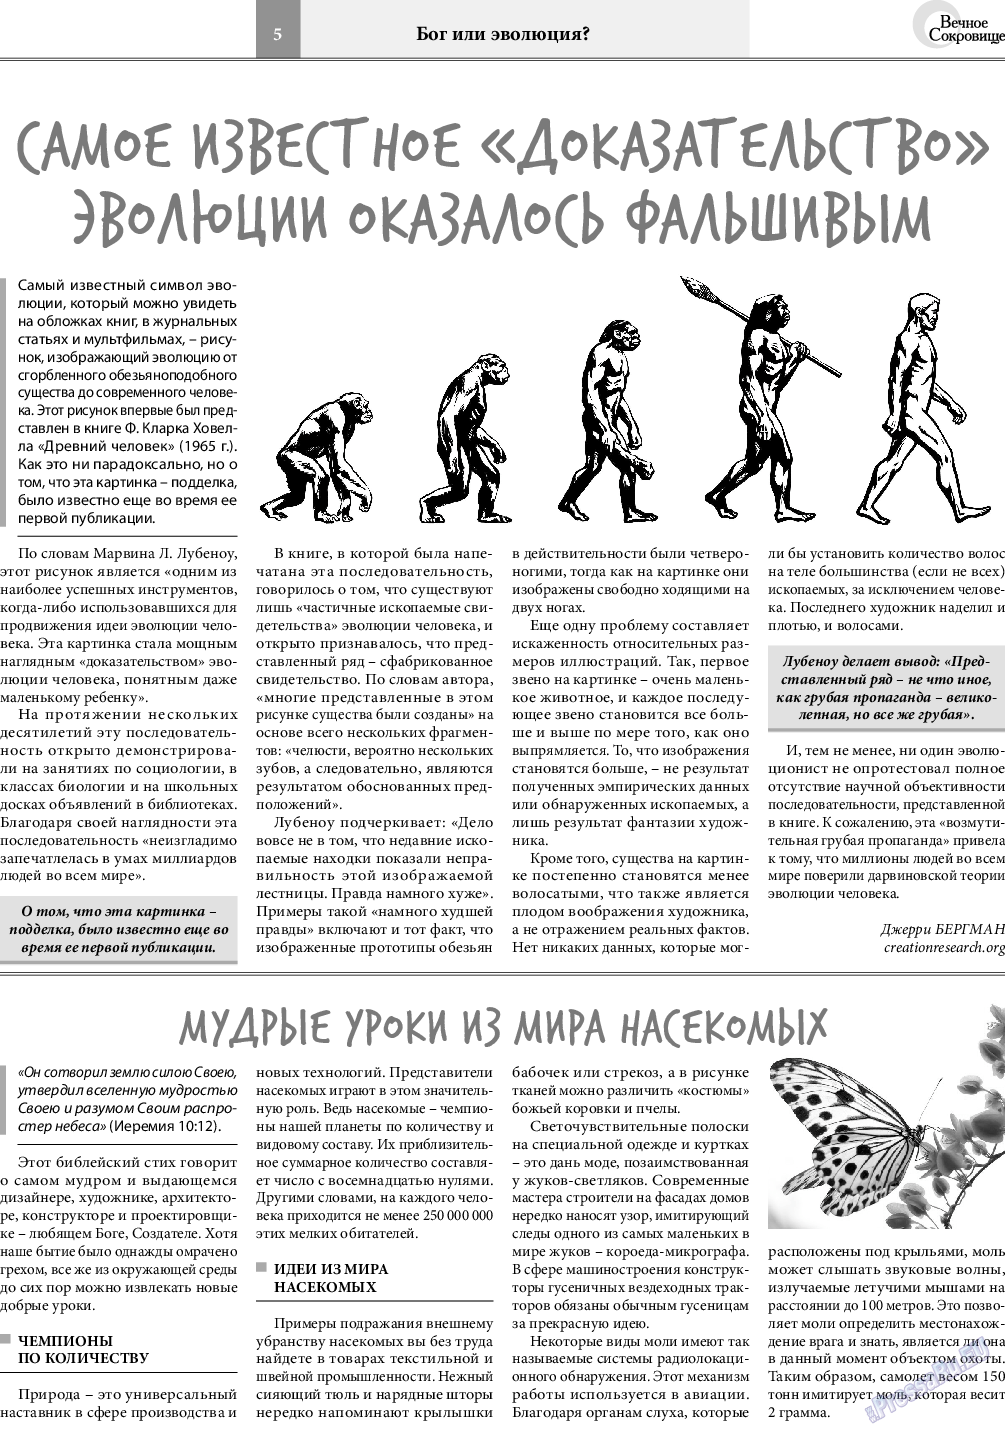 Вечное сокровище, газета. 2020 №2 стр.5